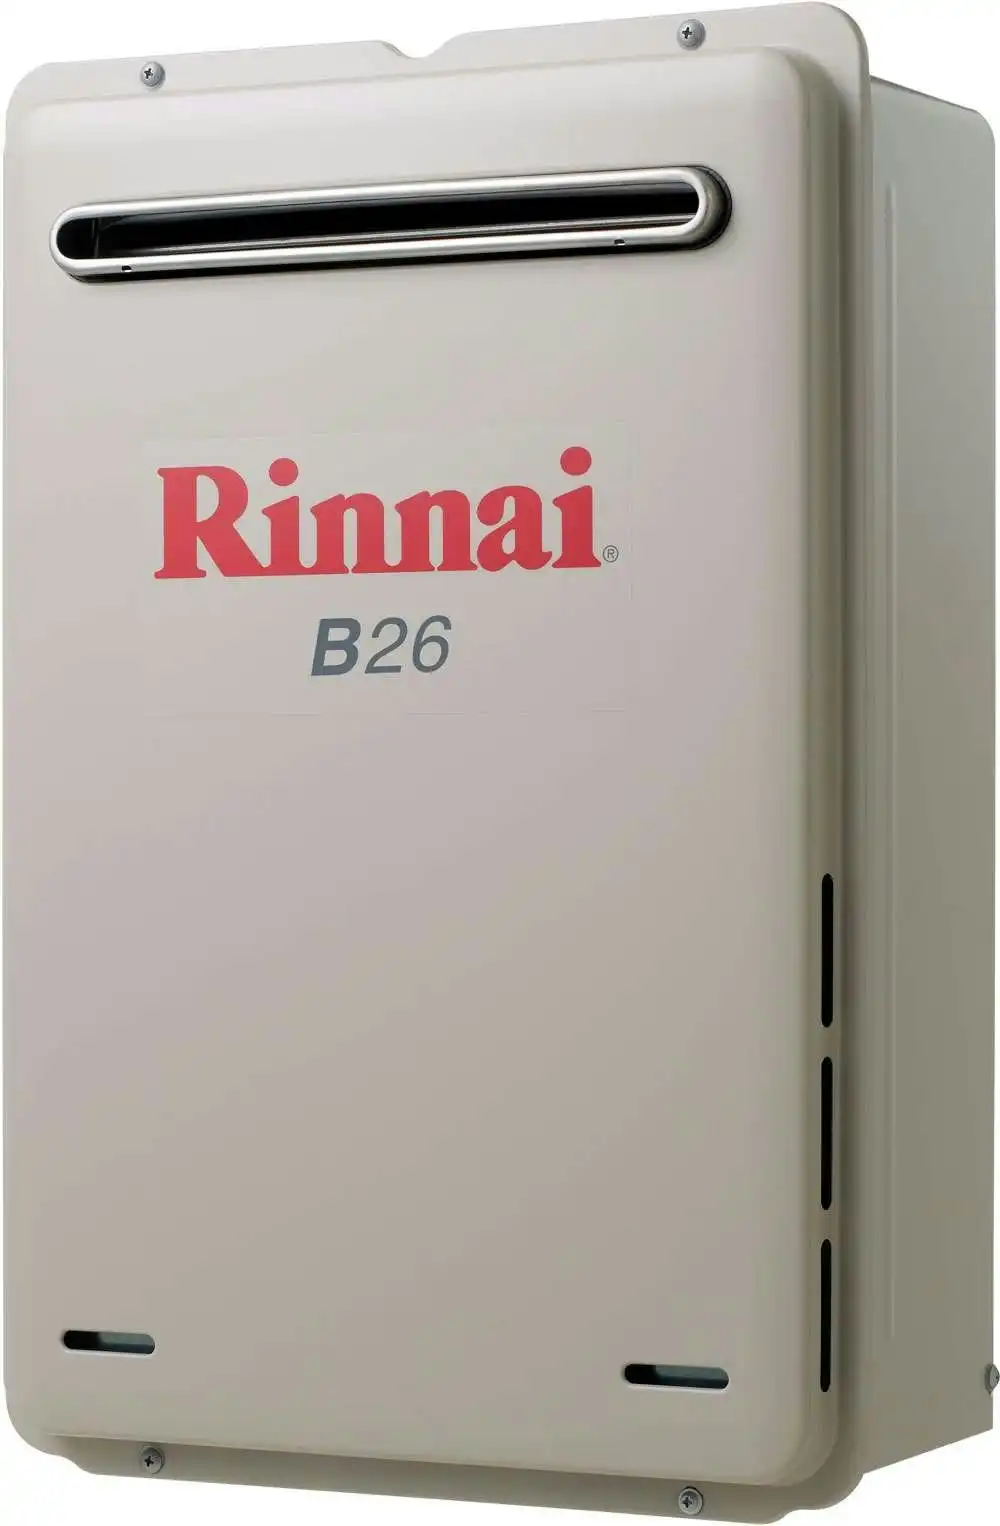 Rinnai Builders 60oC 26L Instant Hot Water System B26L60A B26 *LPG GAS*